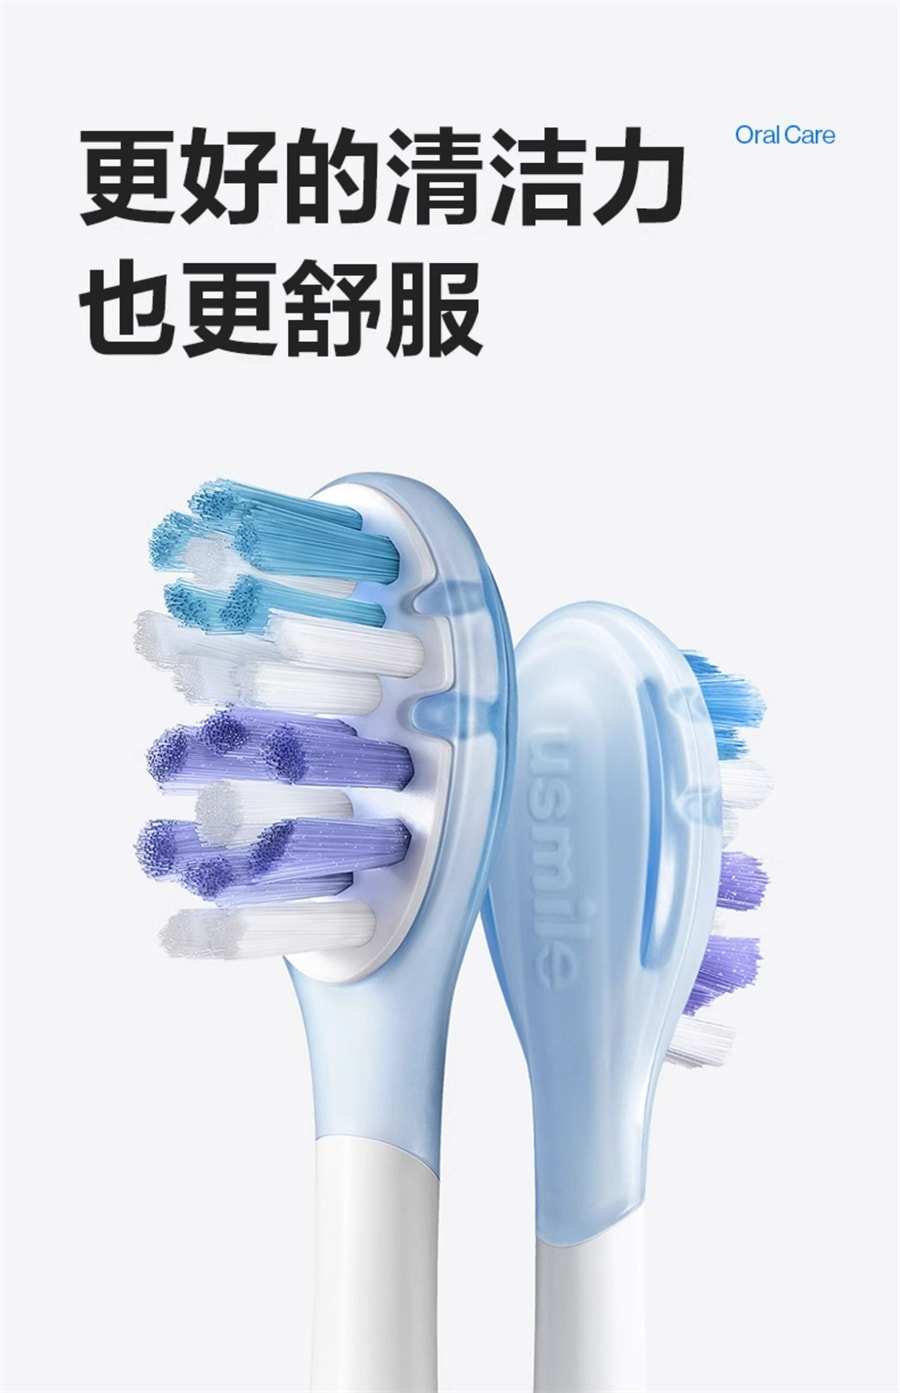 【中国直邮】笑容加USMILE  电动牙刷男女士成人情侣款自动智能礼物品盒套装Y20  水白